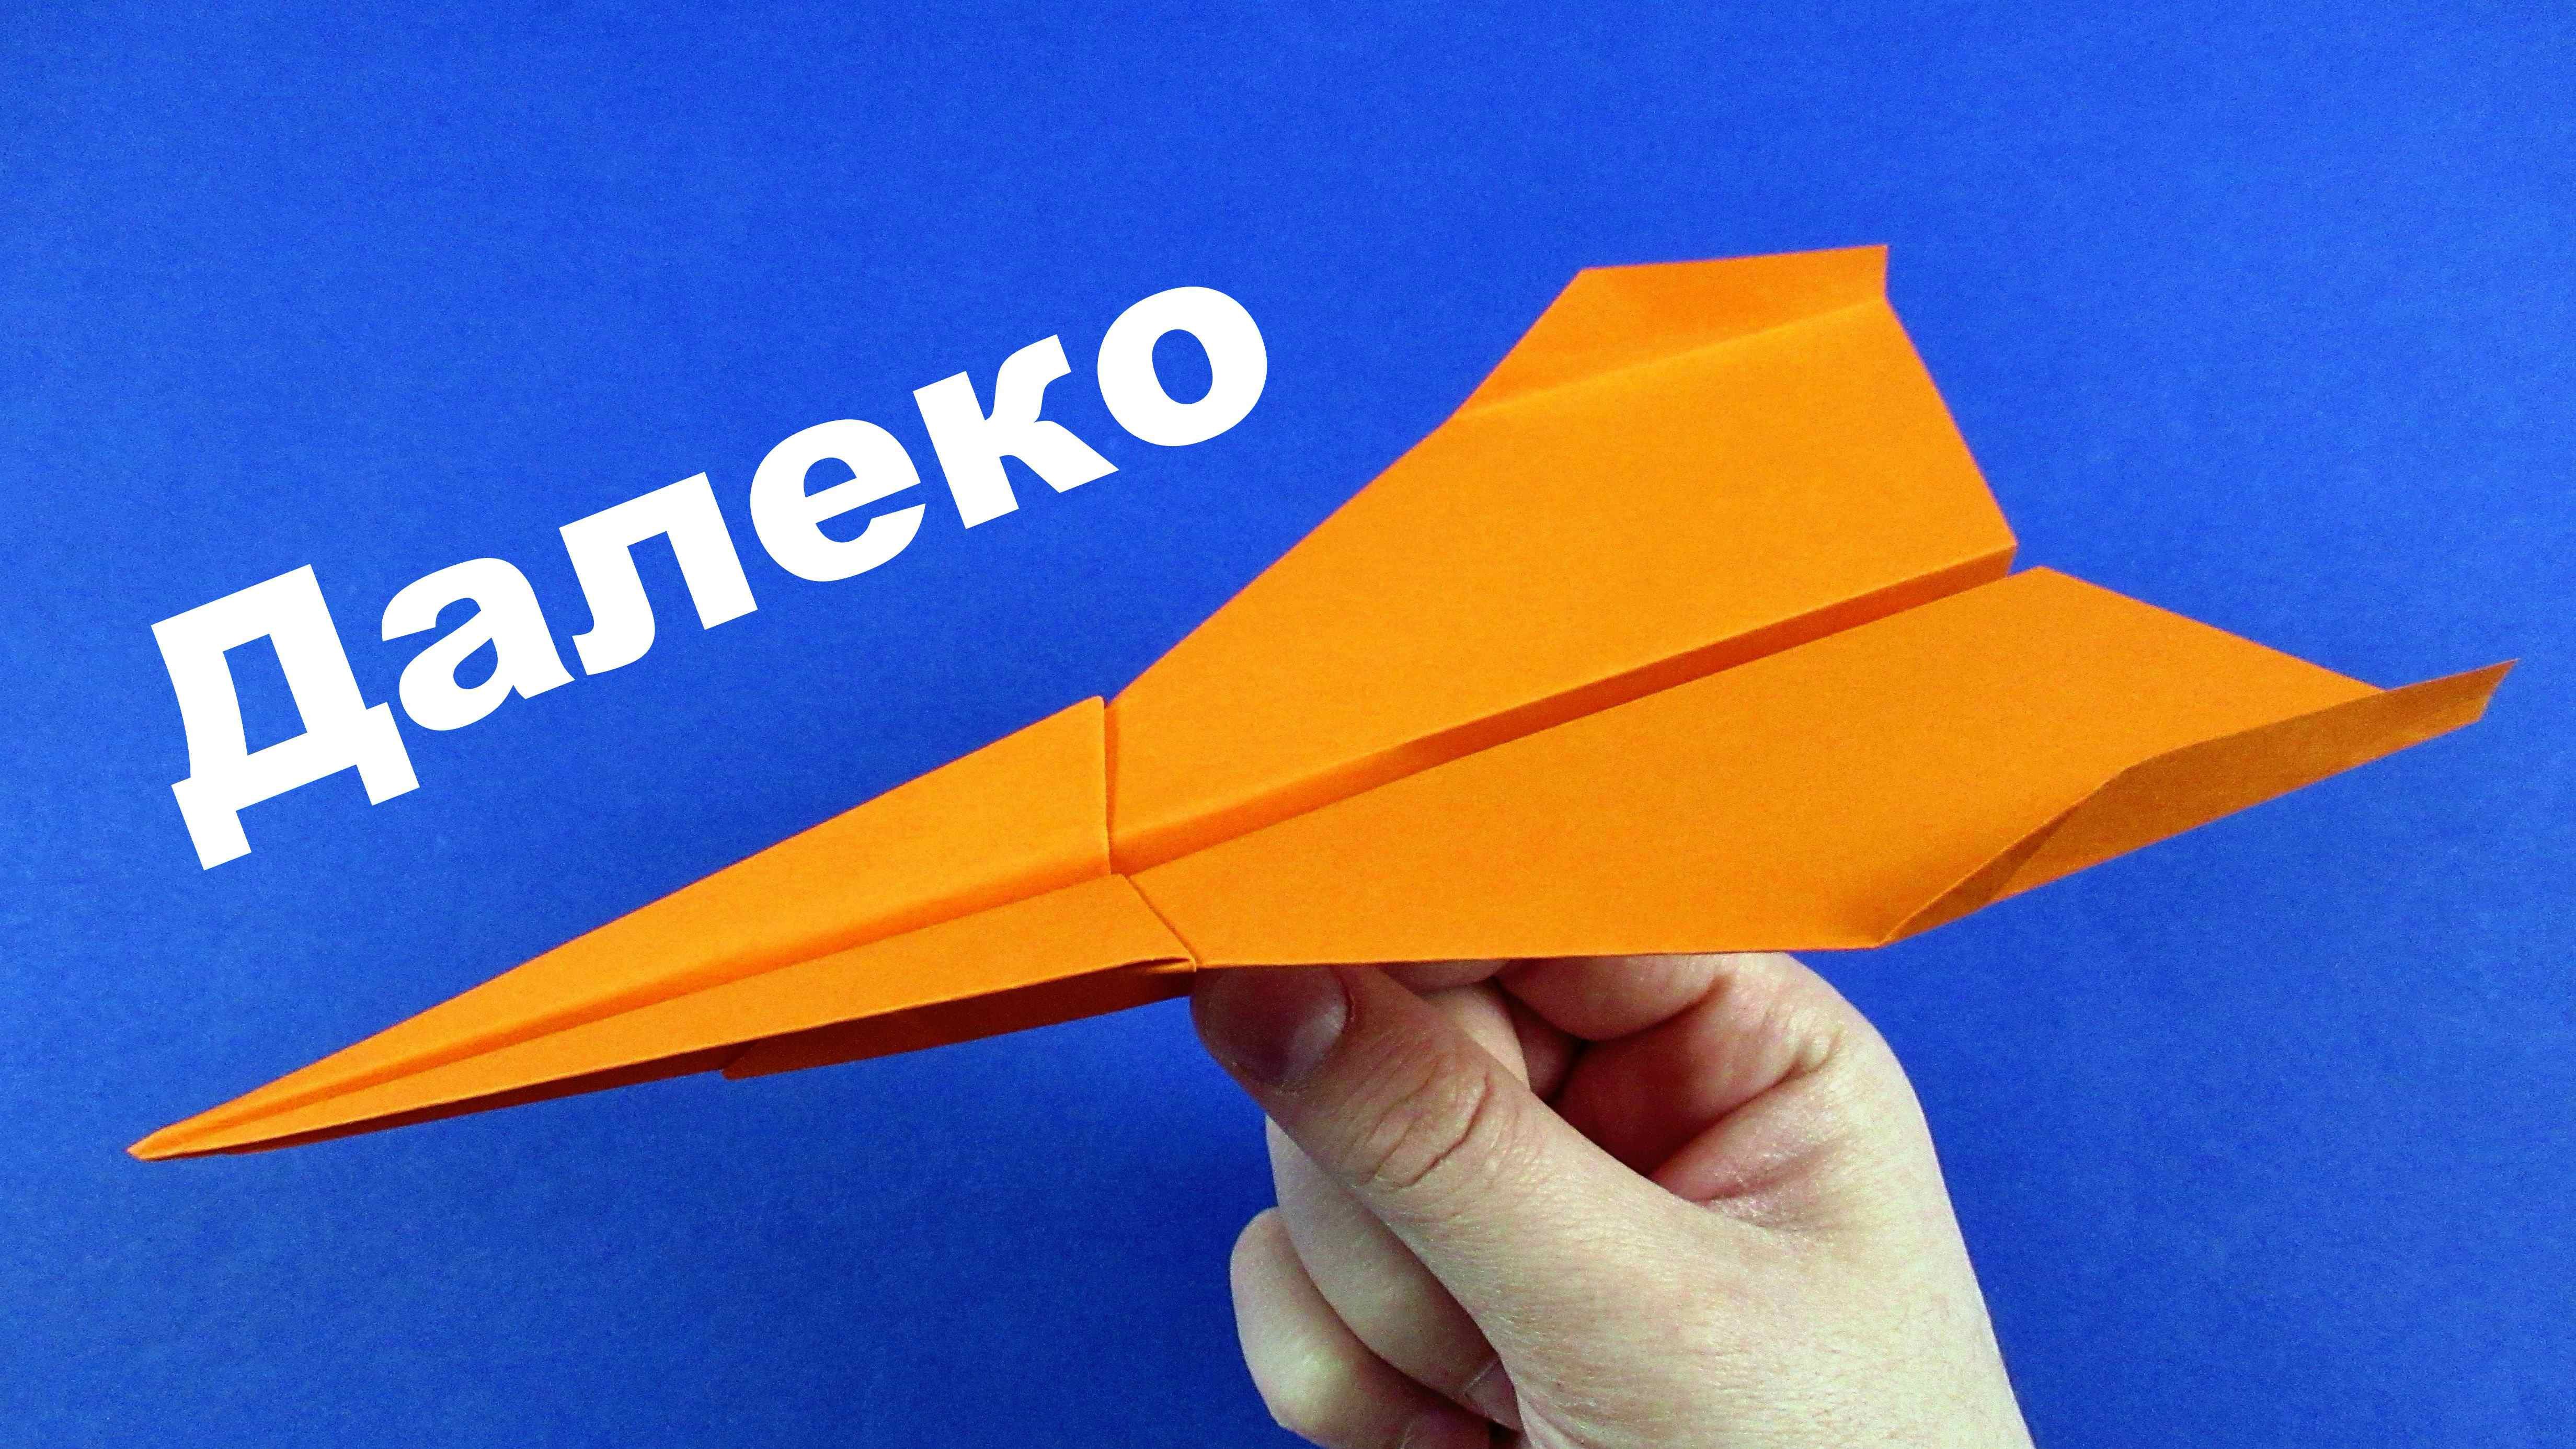 Легкий летающий самолет. Самолёт из бумаги. Оригами самолет. Бумажные самолётики из бумаги. Необычный самолет из бумаги.